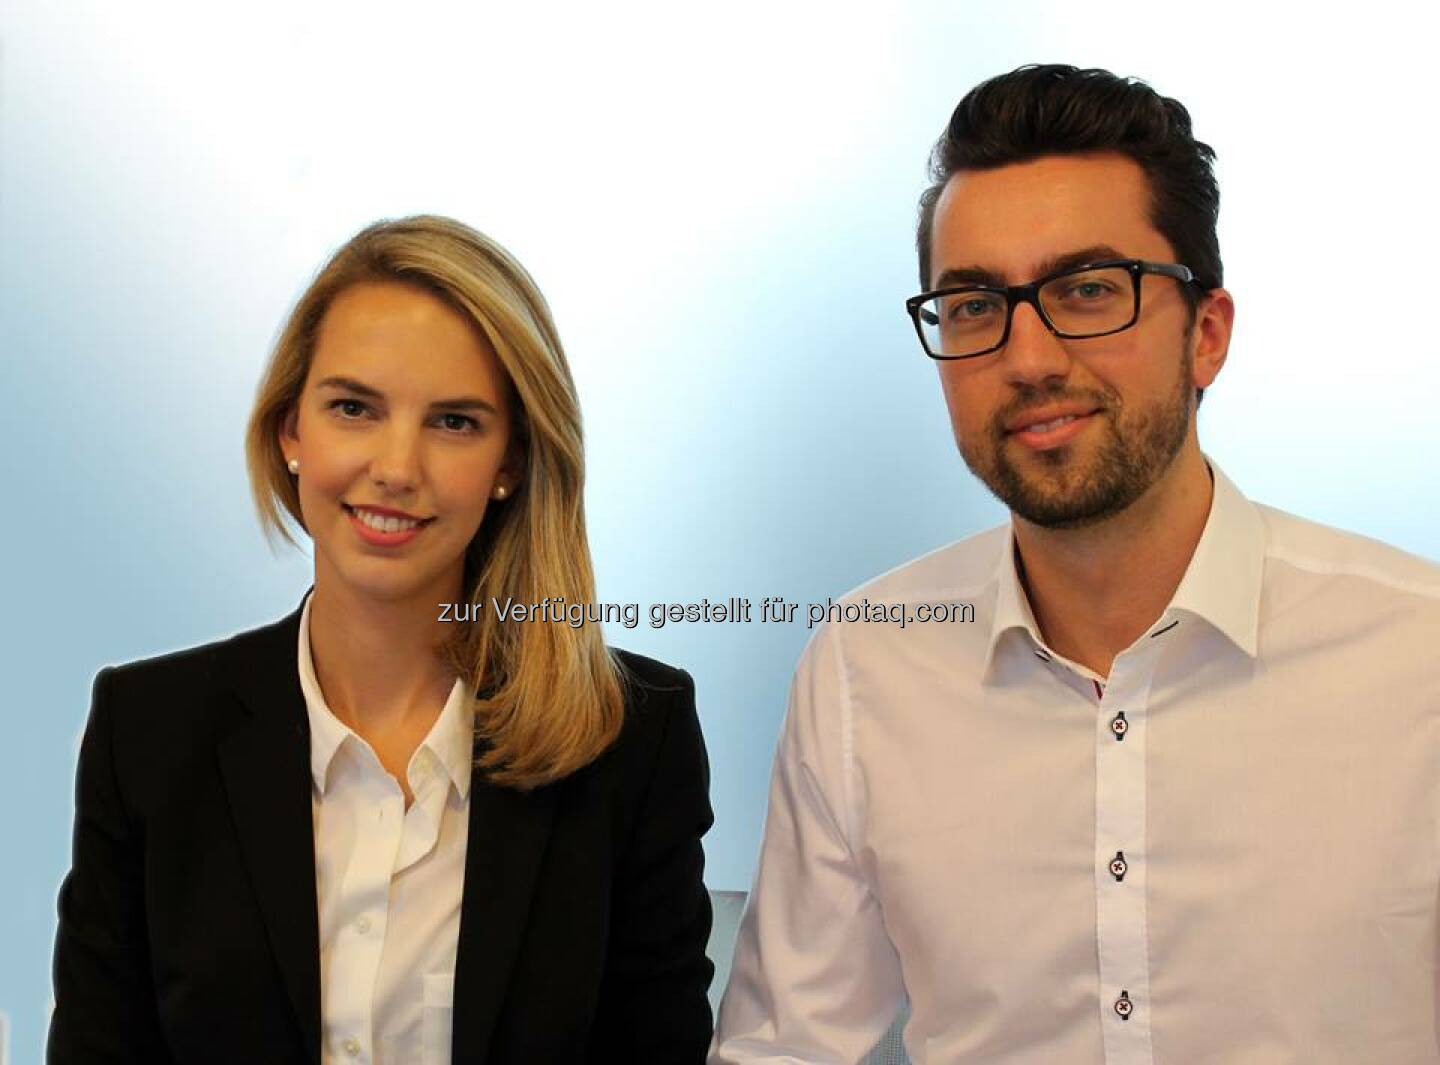 Patrizia Trainees 2.0. Mit Nina Munk und Sebastian Zukowski hat im Oktober die zweite Generation von Management Trainees bei PATRIZIA in Augsburg begonnen. Wir wünschen viel Erfolg!  Source: http://facebook.com/patriziaimmobilien